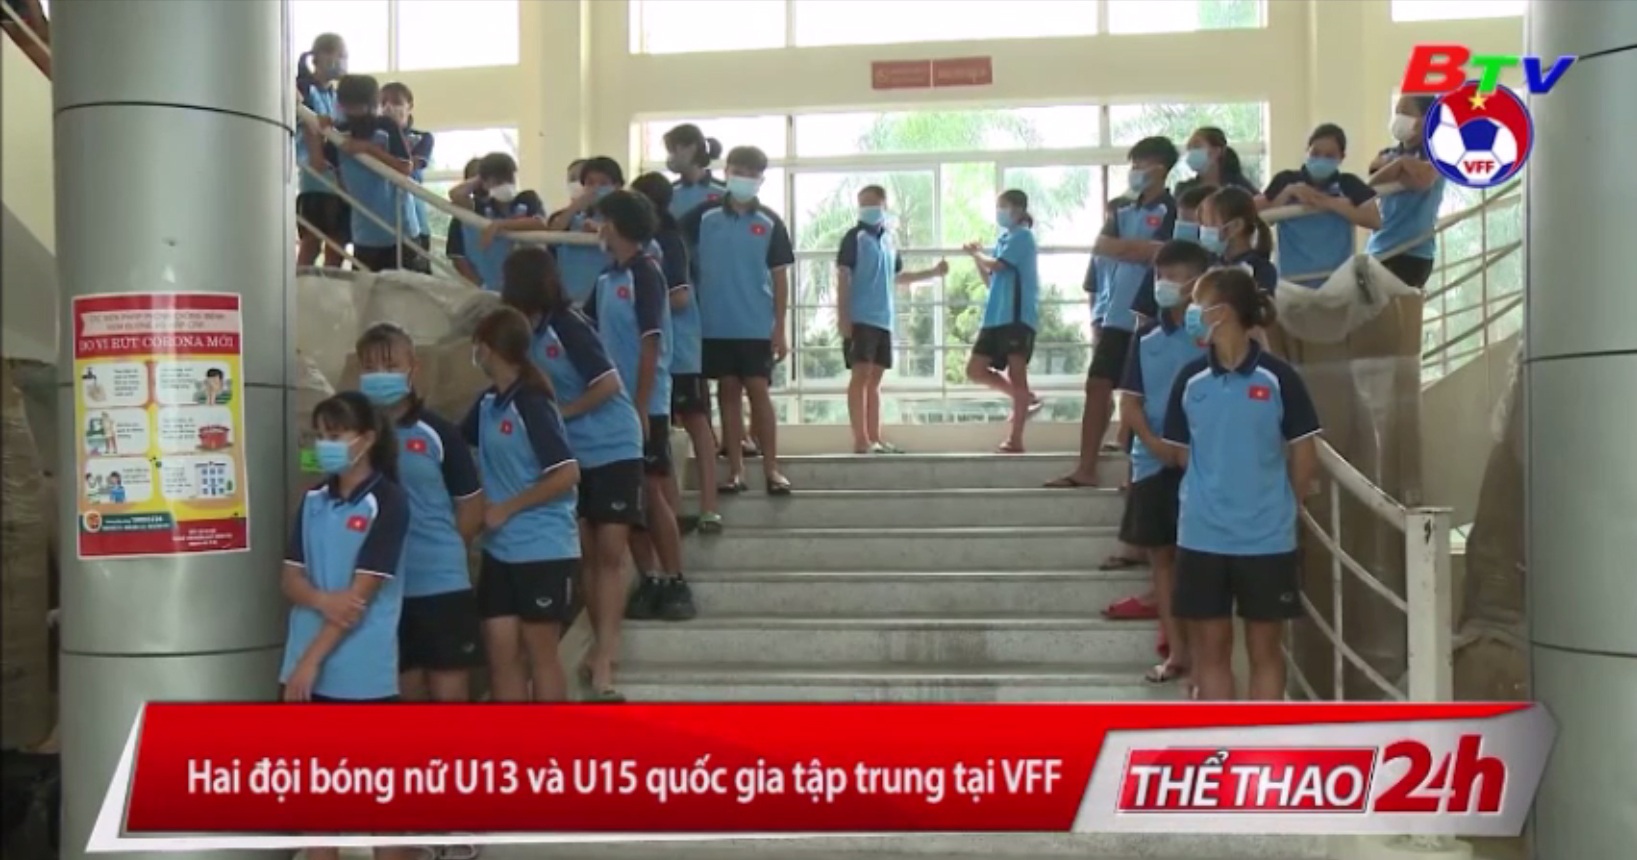 Hai đội bóng nữ U13 và U15 Quốc gia tập trung tại VFF